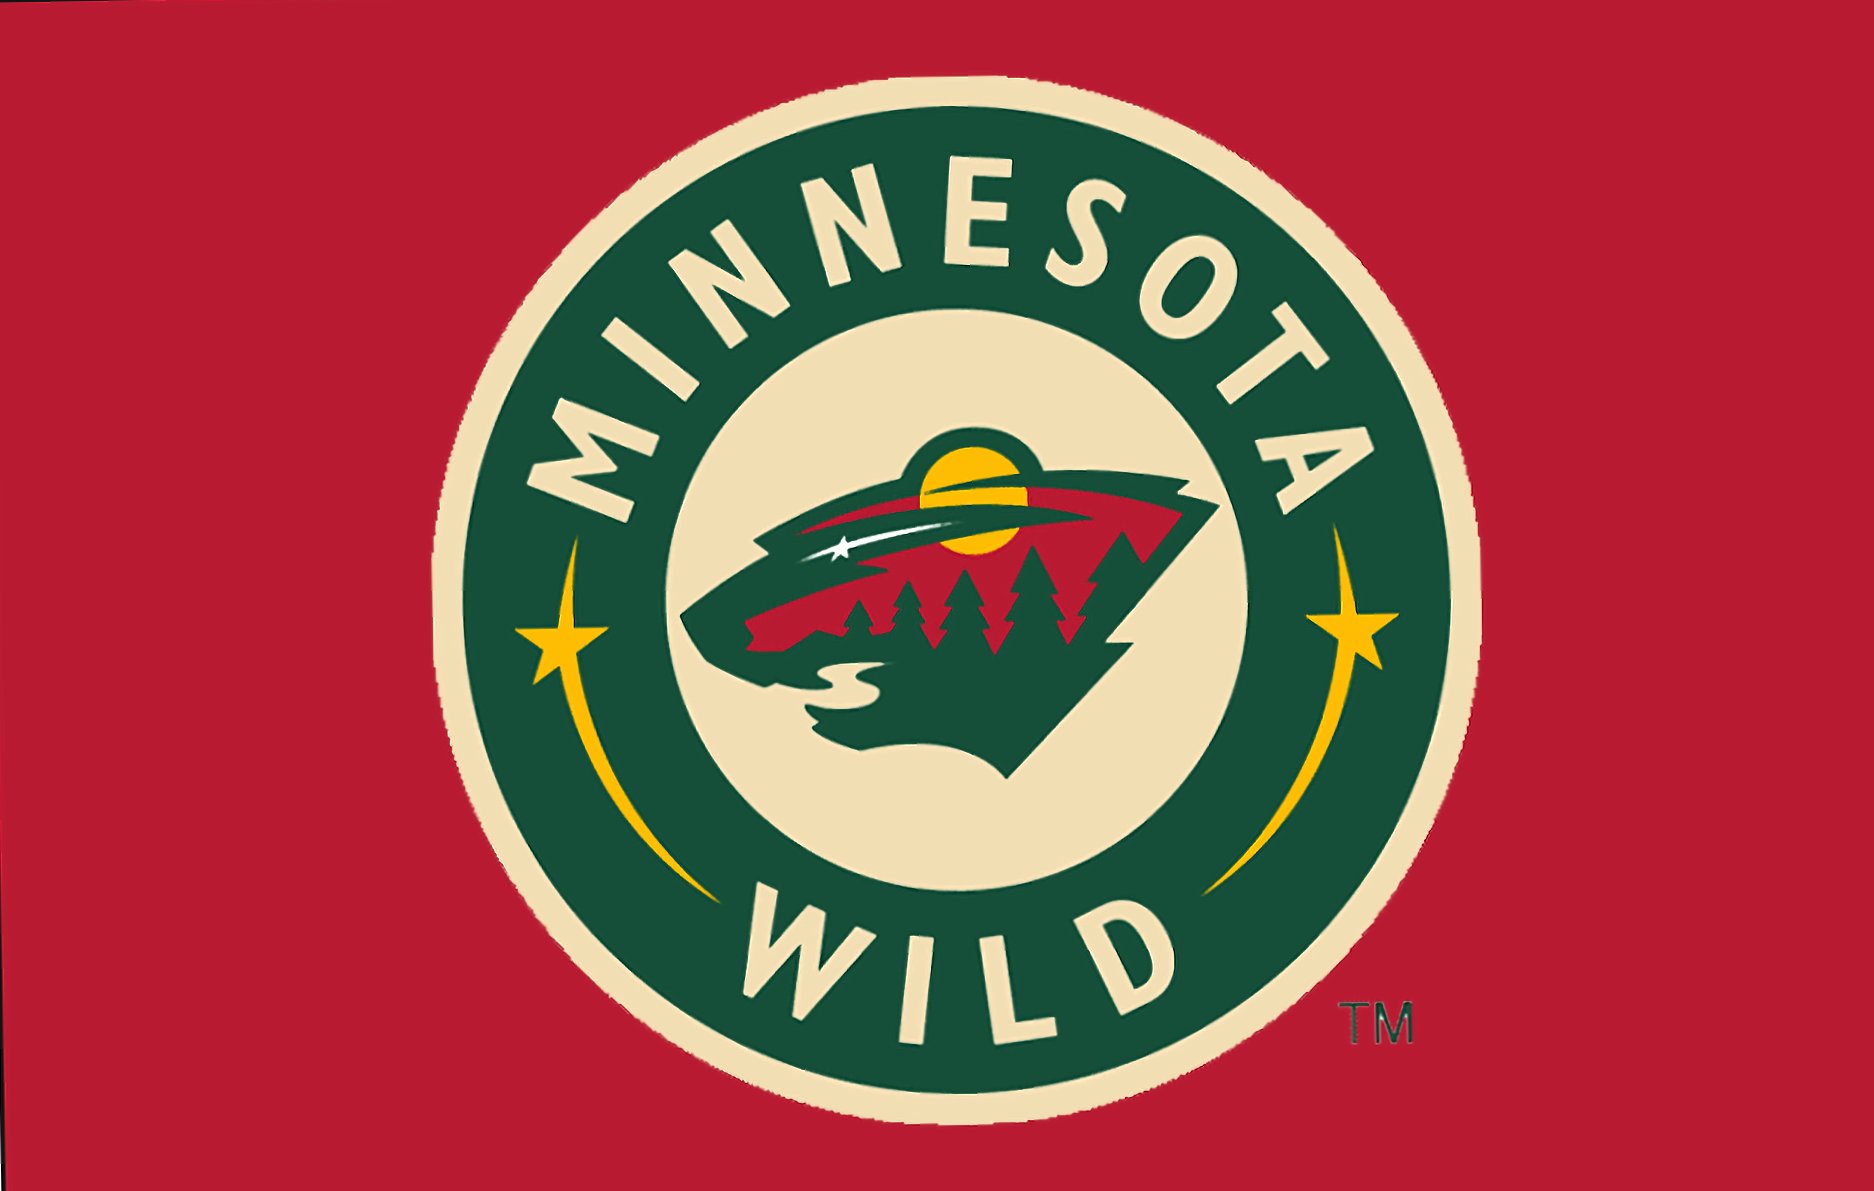 Minnesota Wild at 2048 x 2048 iPad size wallpapers HD quality